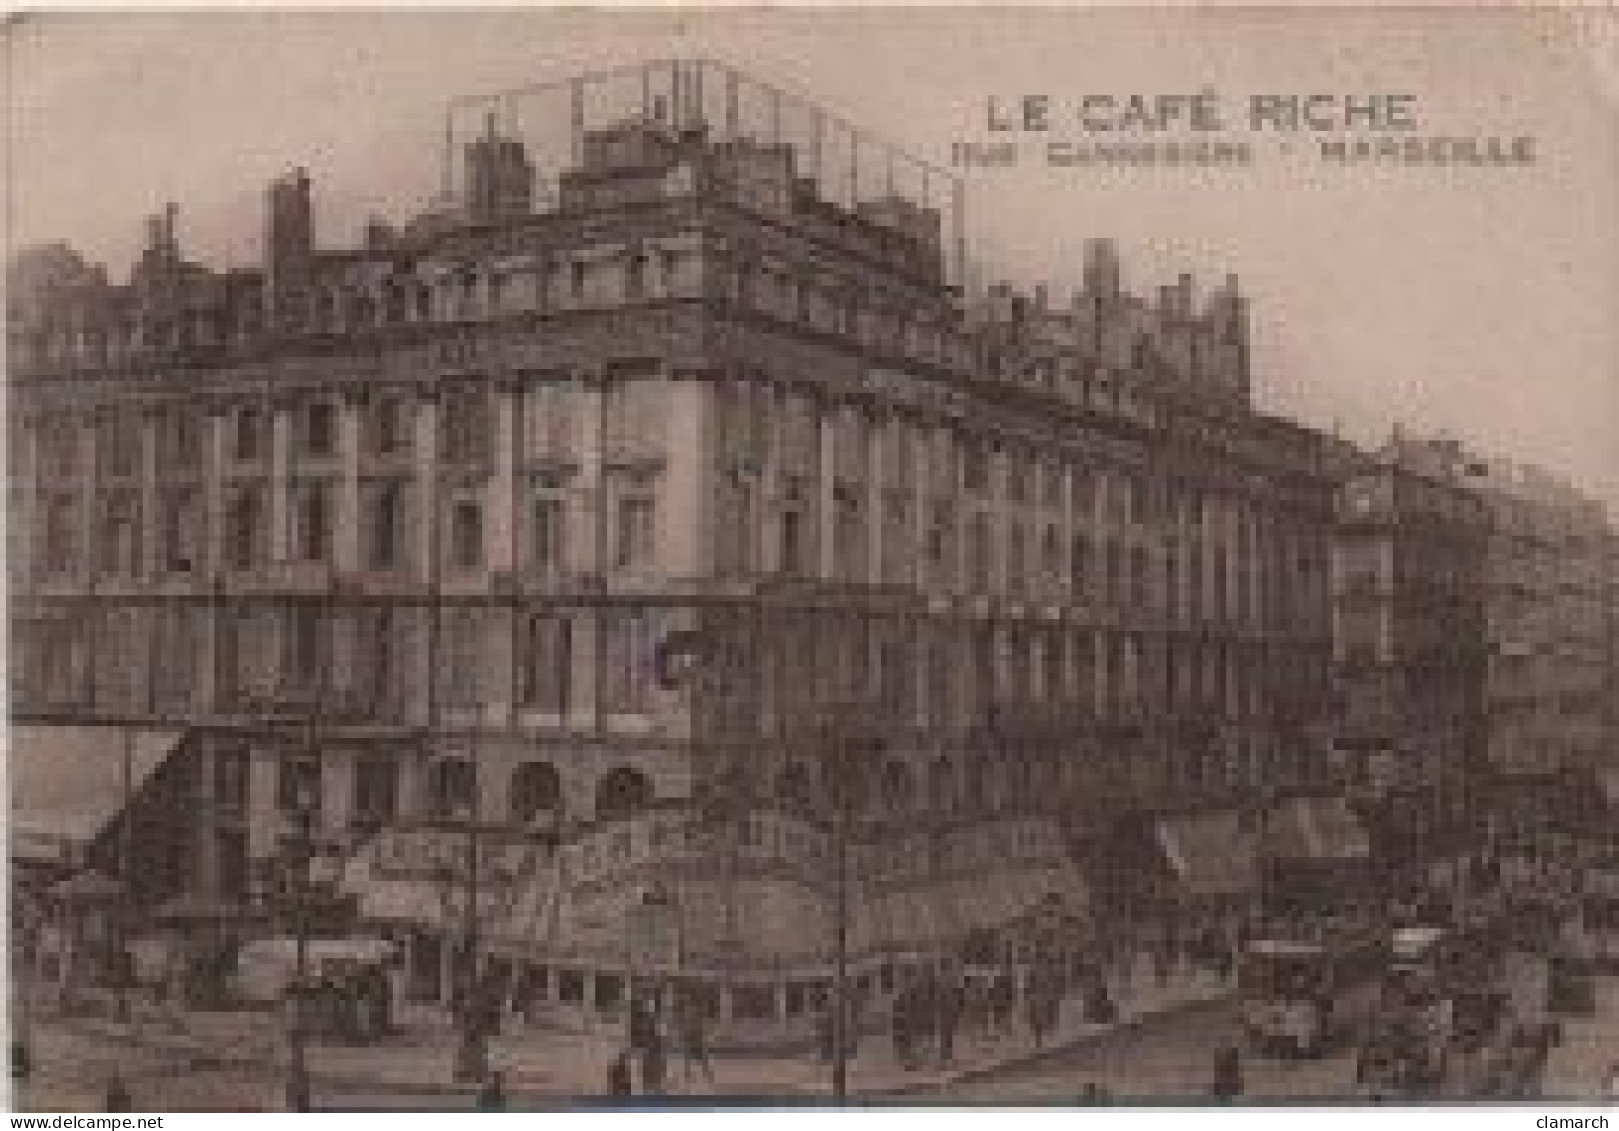 BOUCHE DU RHONE-Marseille Le Café Riche, Rue Cannebière - Canebière, Stadtzentrum